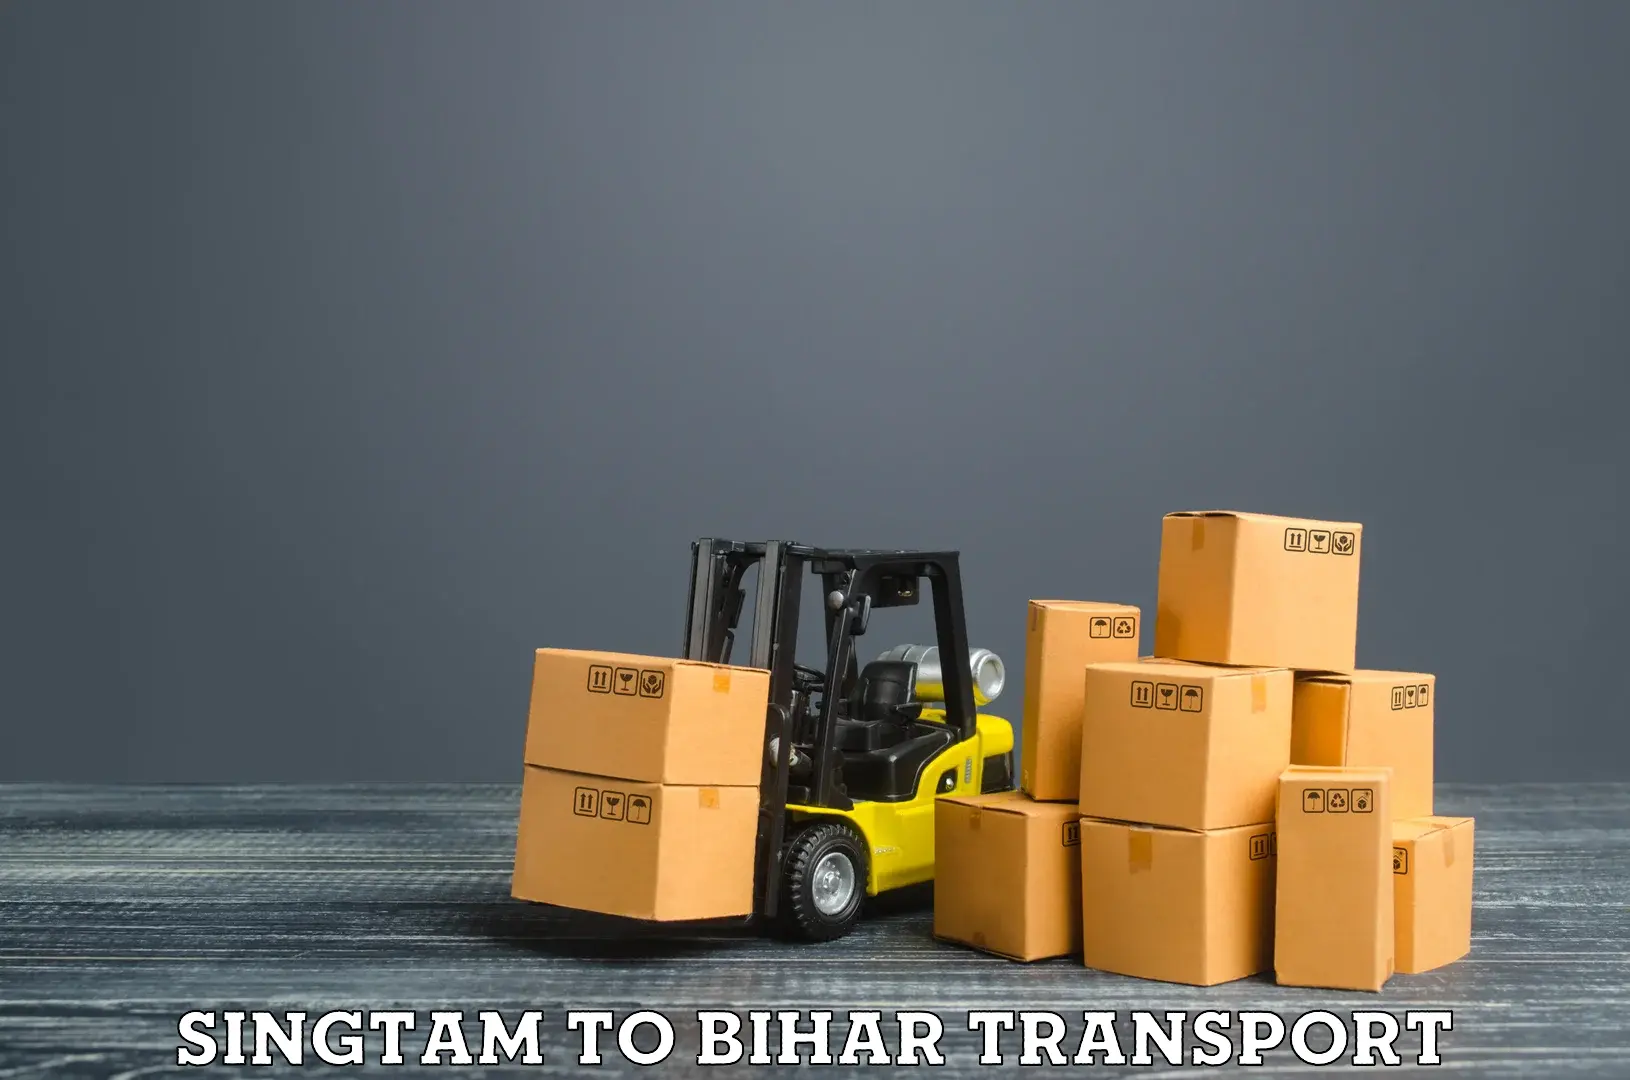 Container transport service Singtam to Tekari